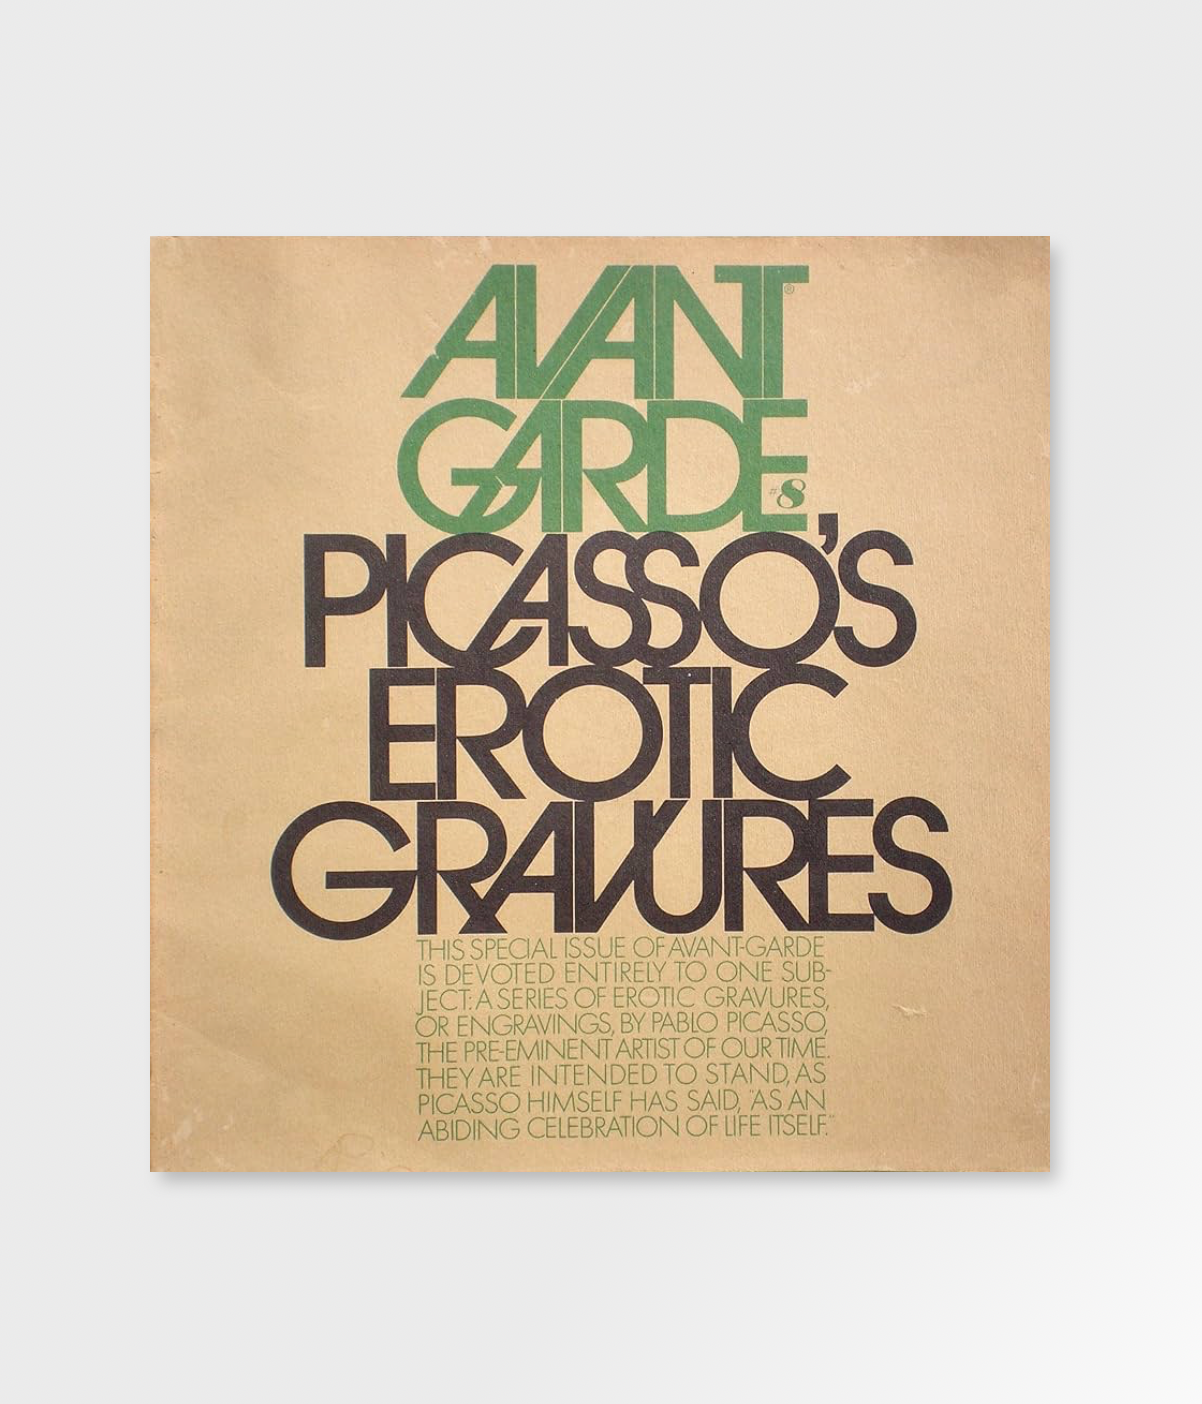 Picasso's Erotic Gravures